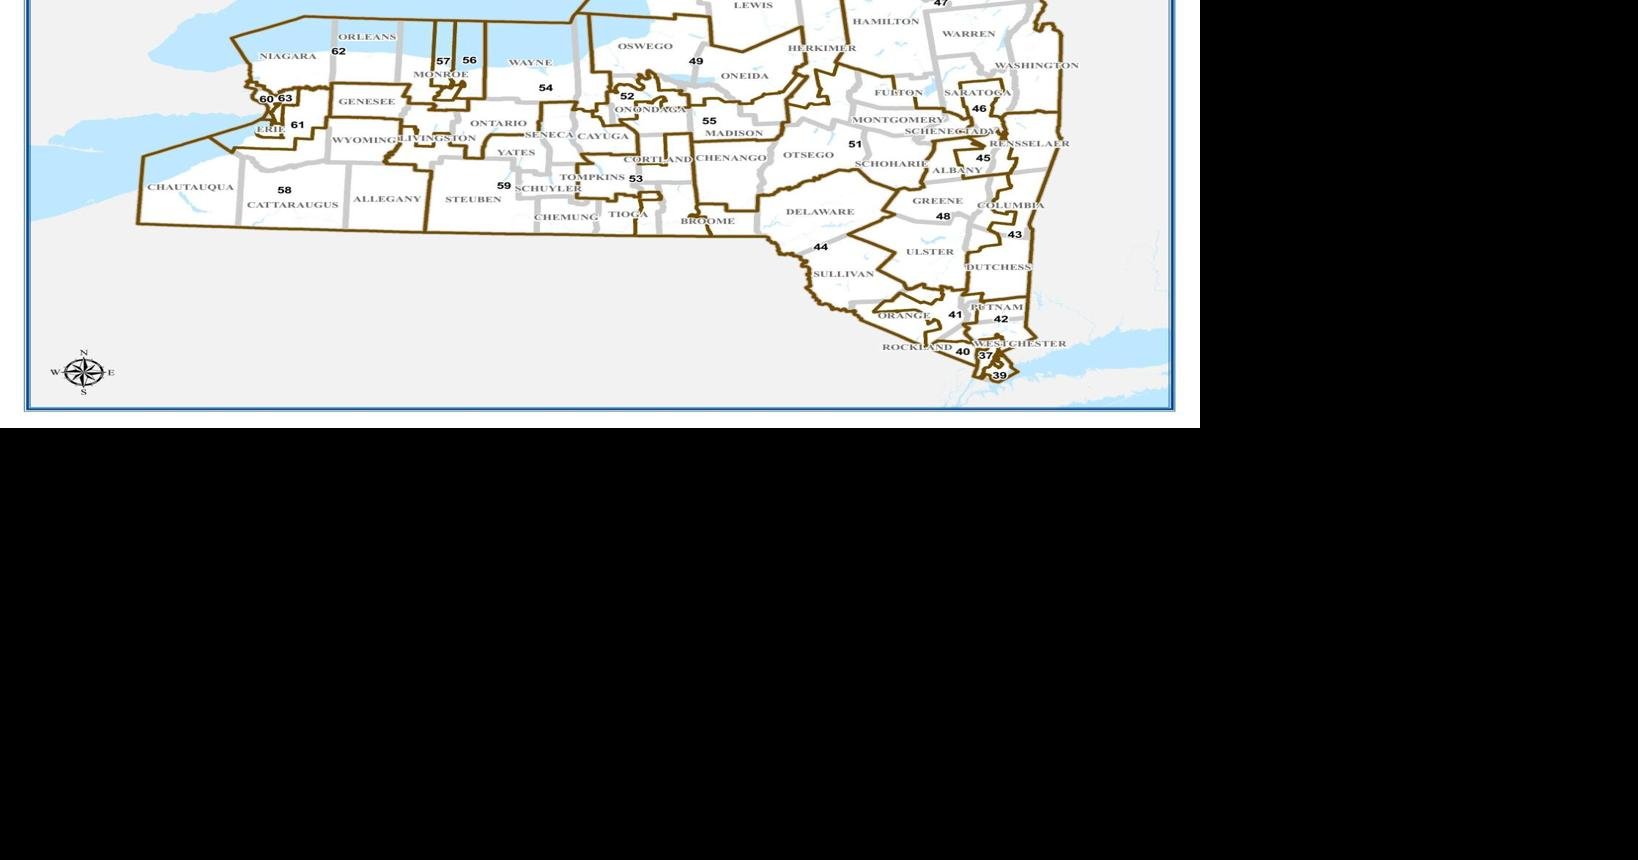 NY Senate districts map